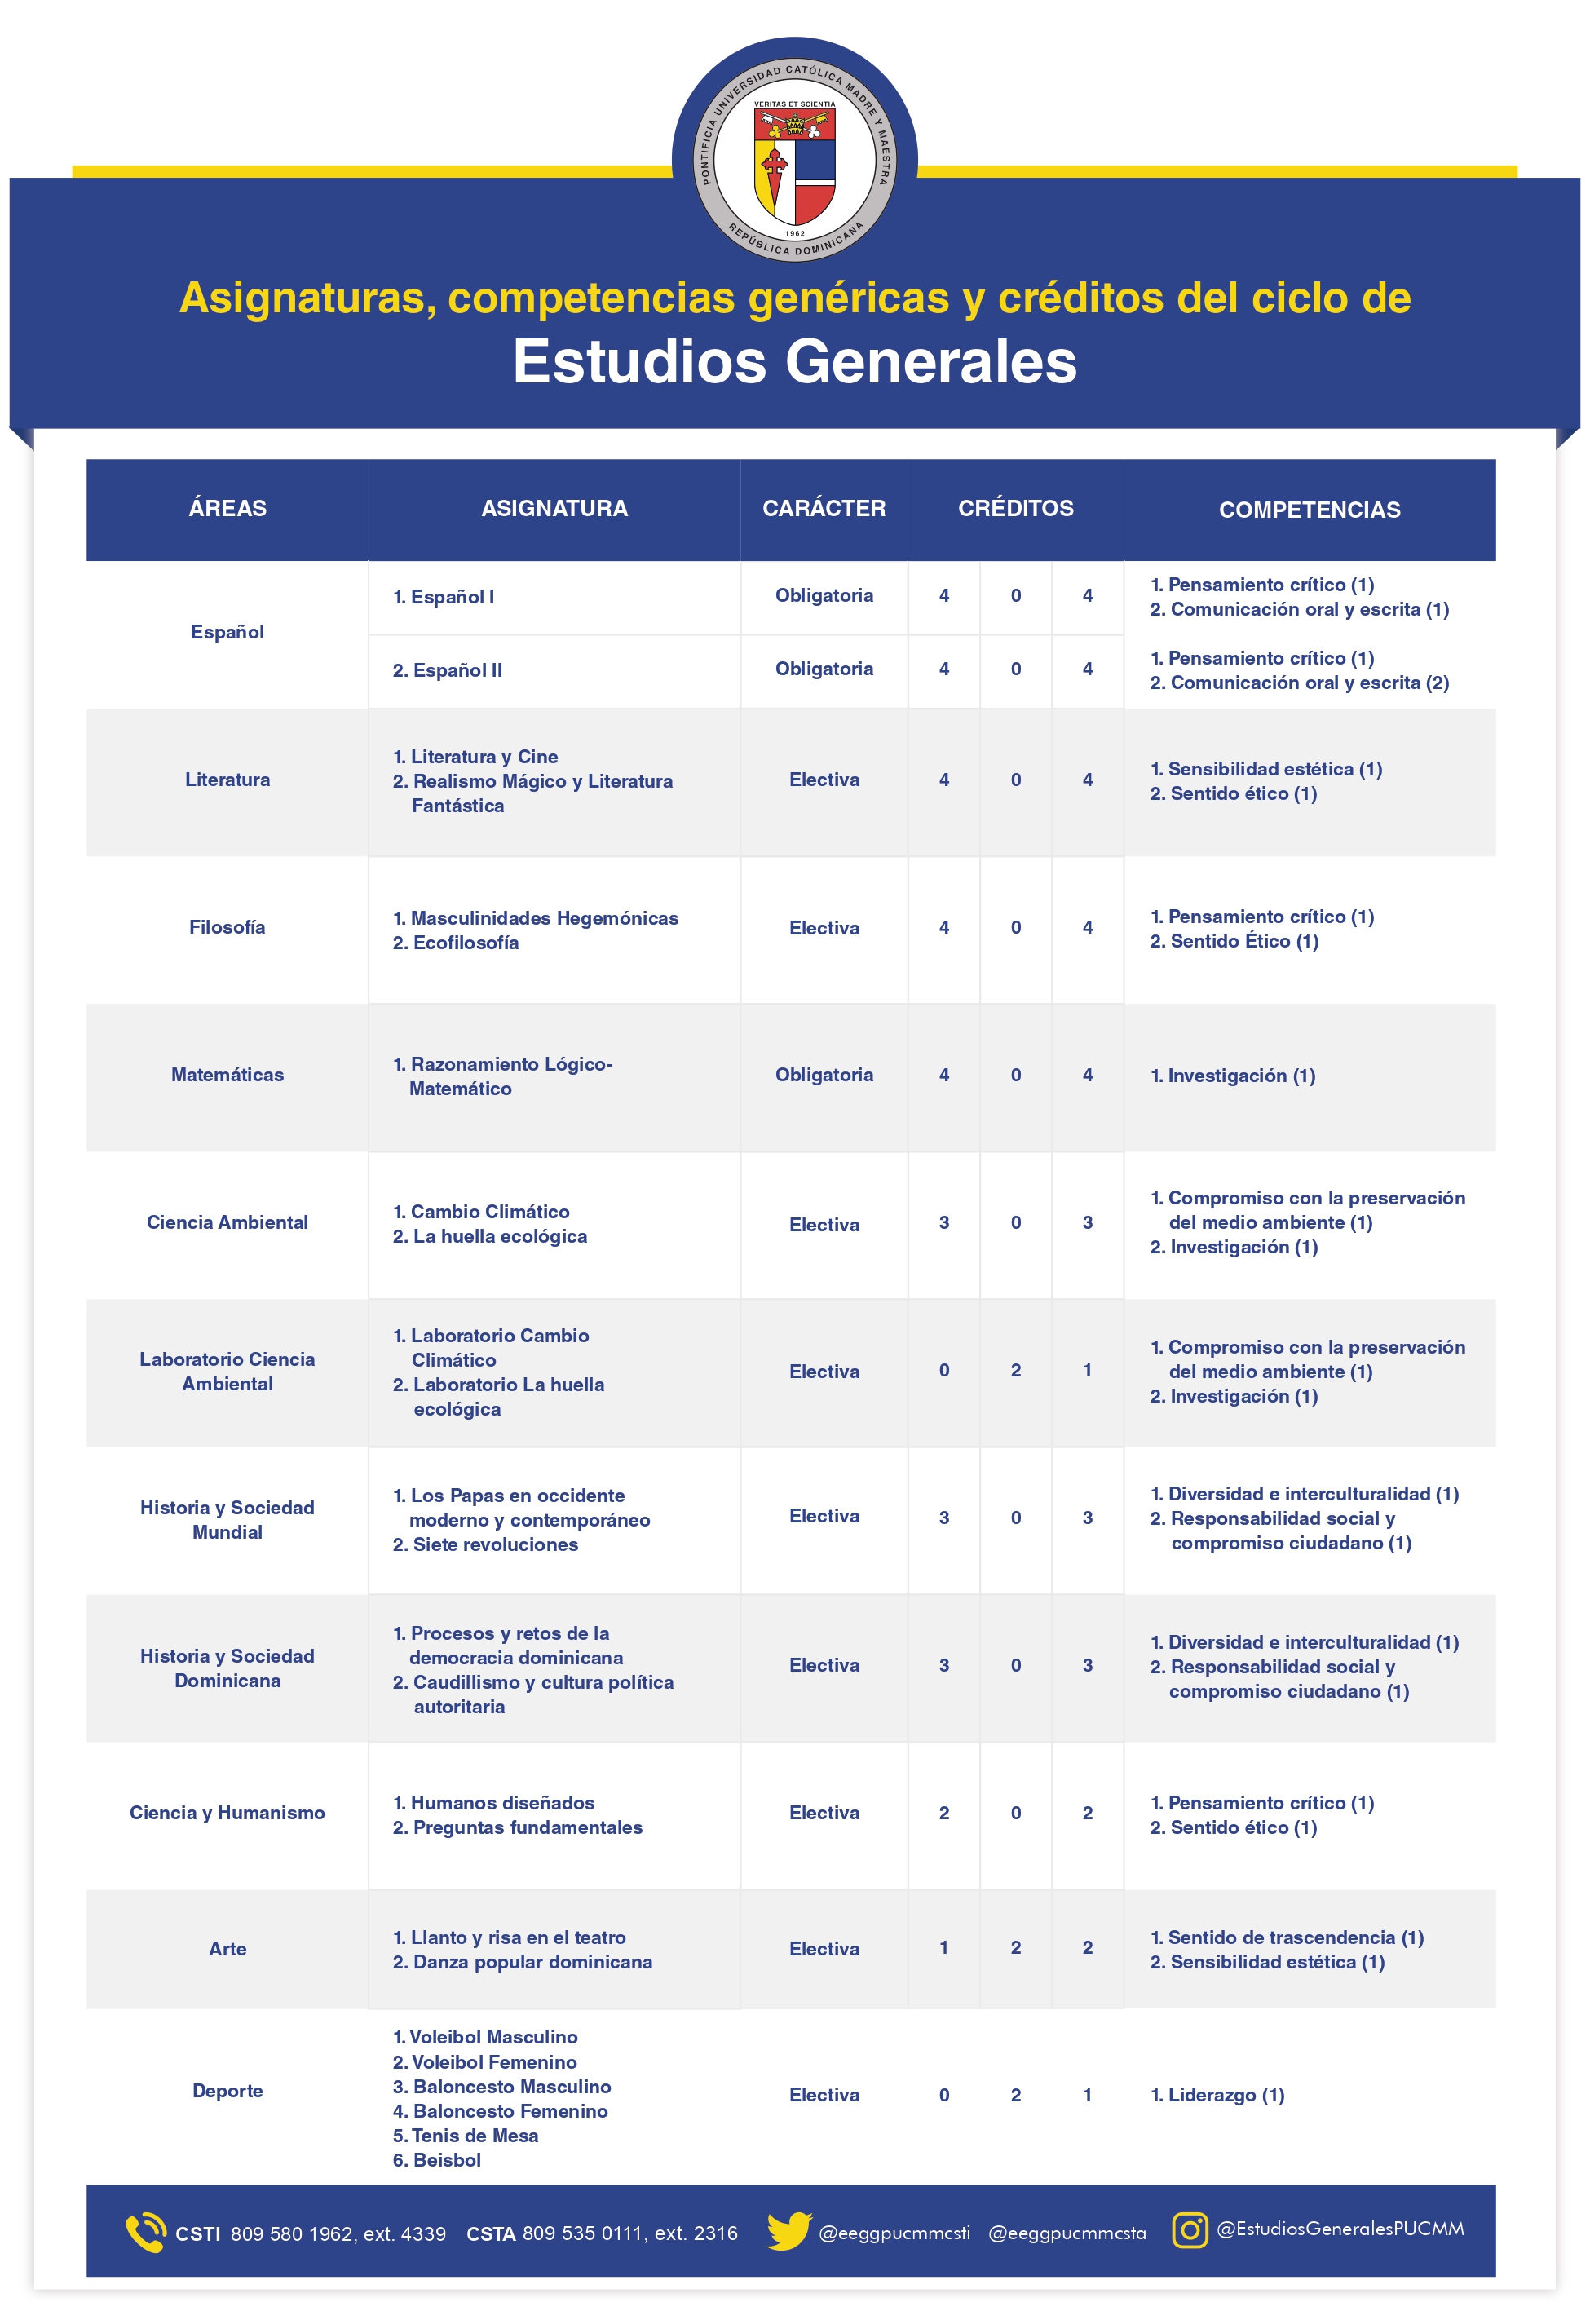 TABLA ASIGNATURAS Y COMPETENCIAS DE EEGG 2_page-0001 (1).jpg